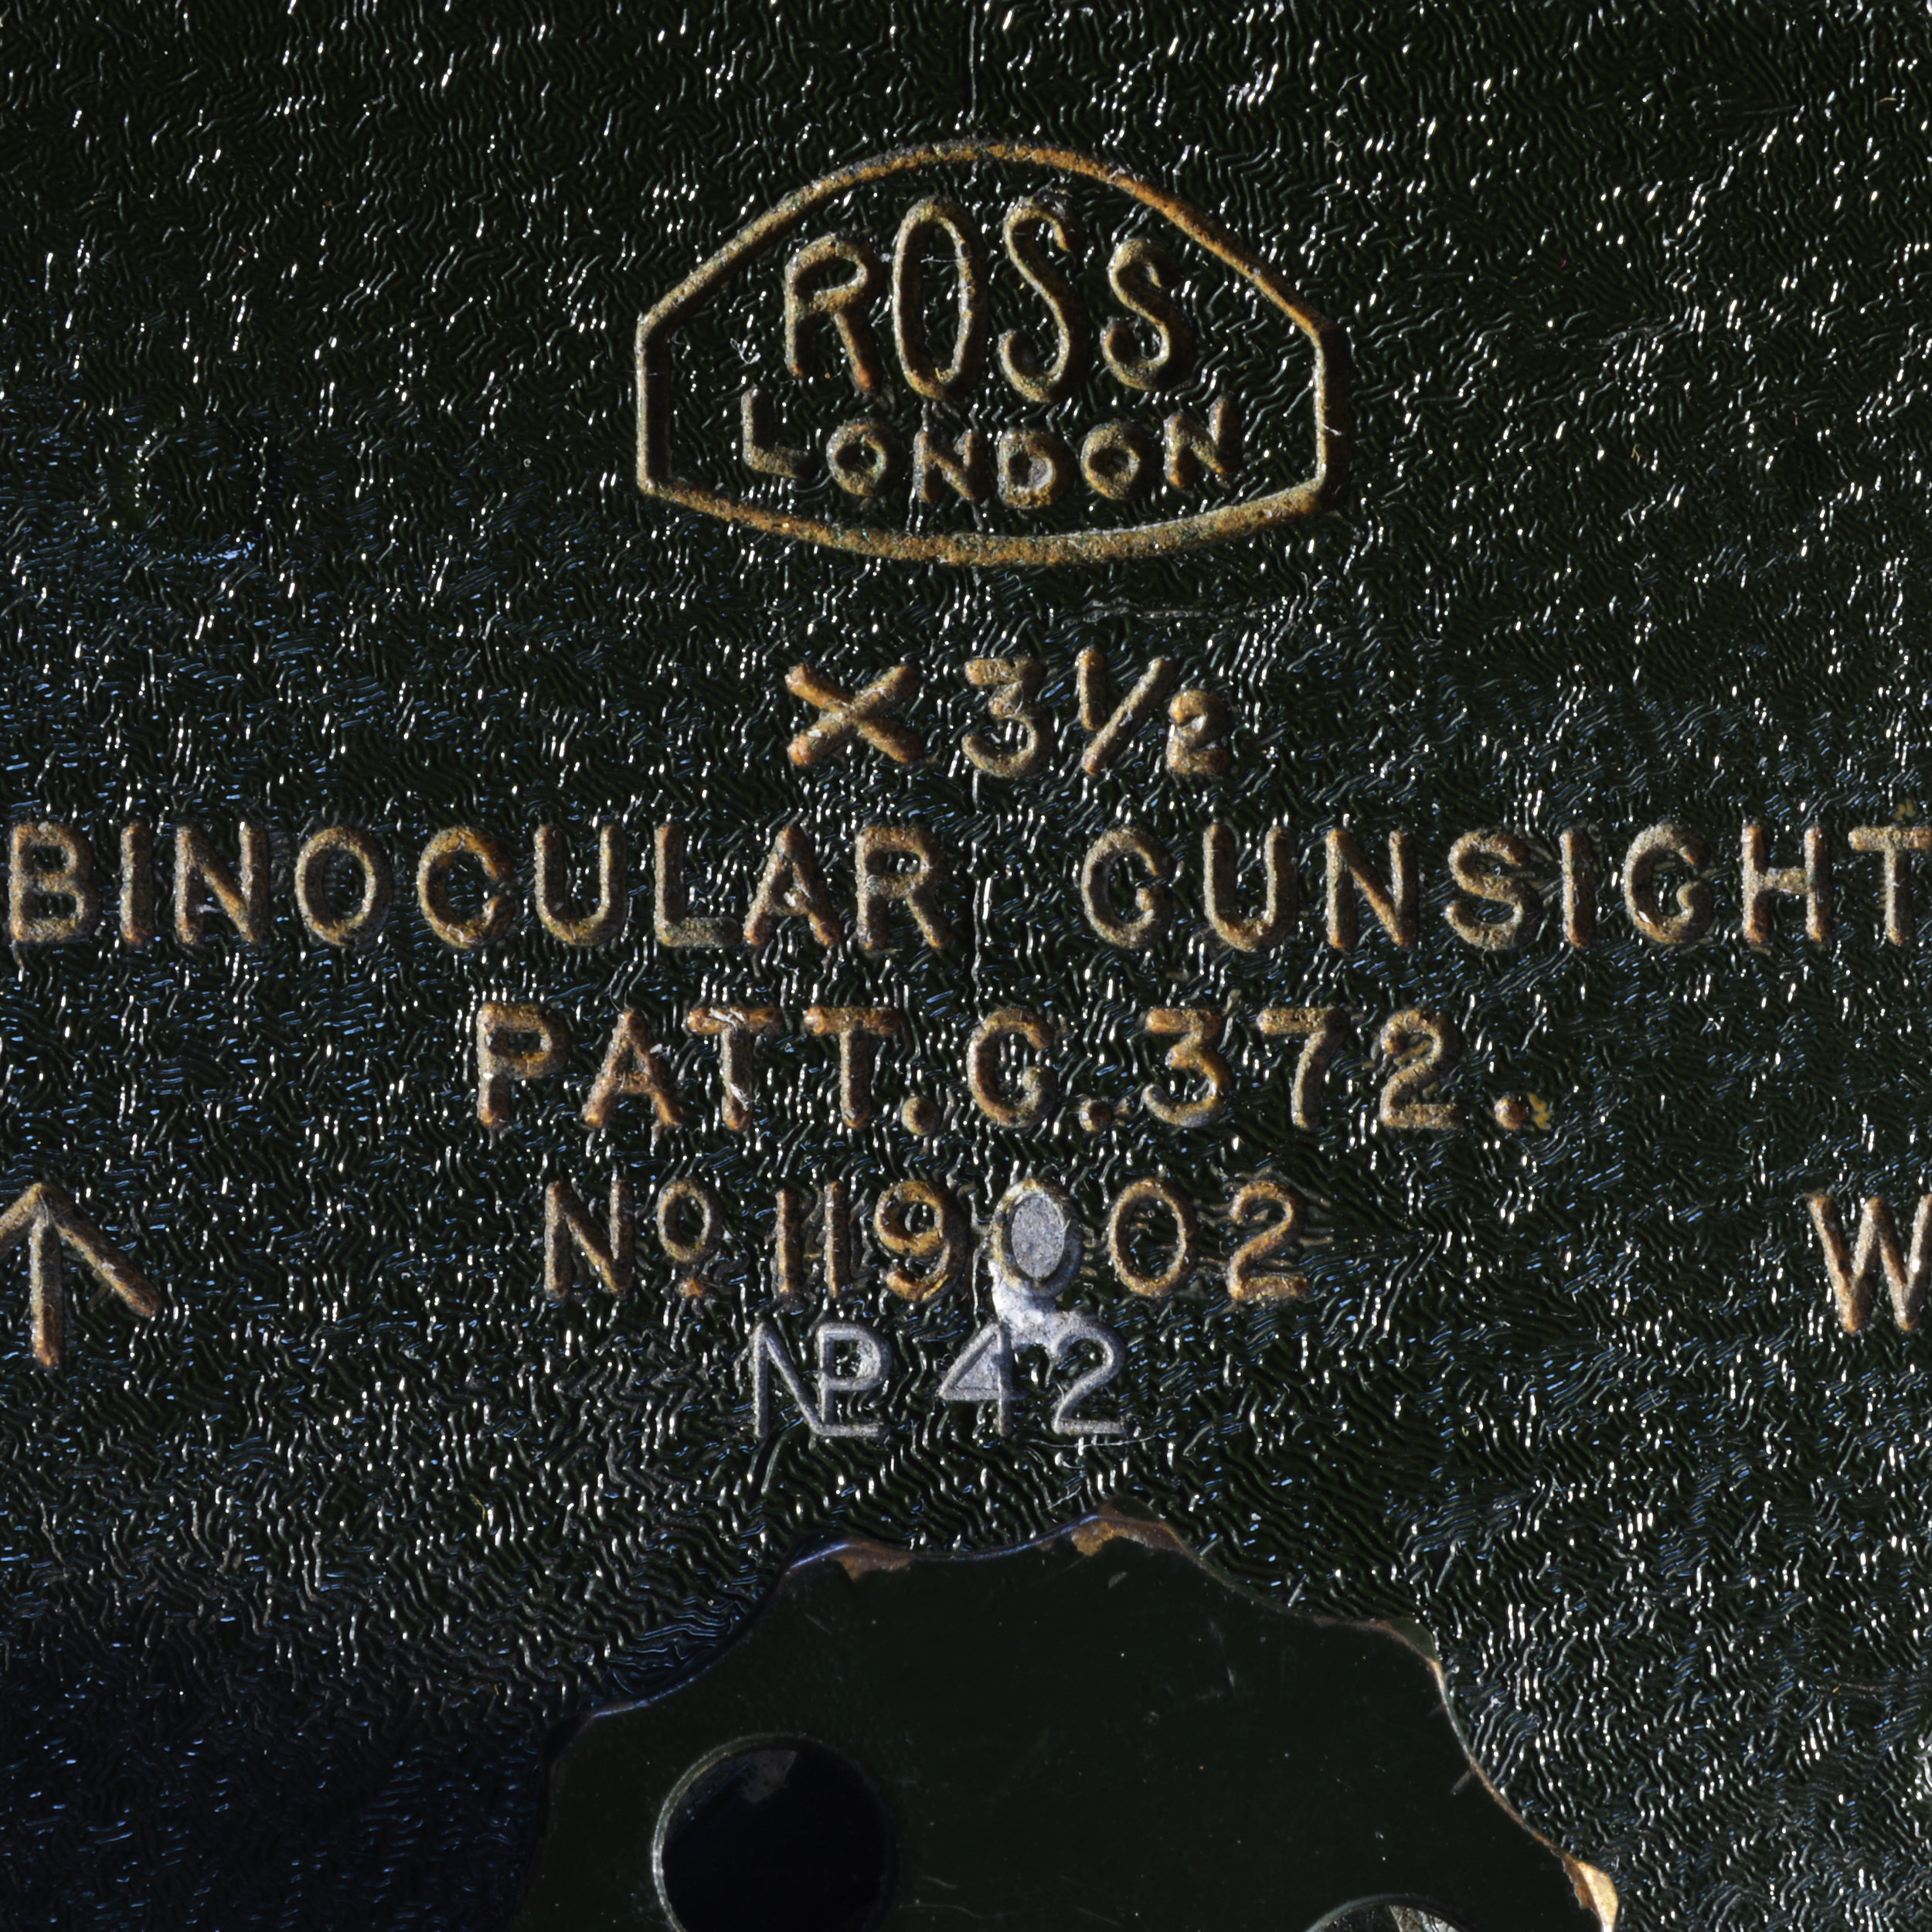 Ross Patt G372 binocular gunsight